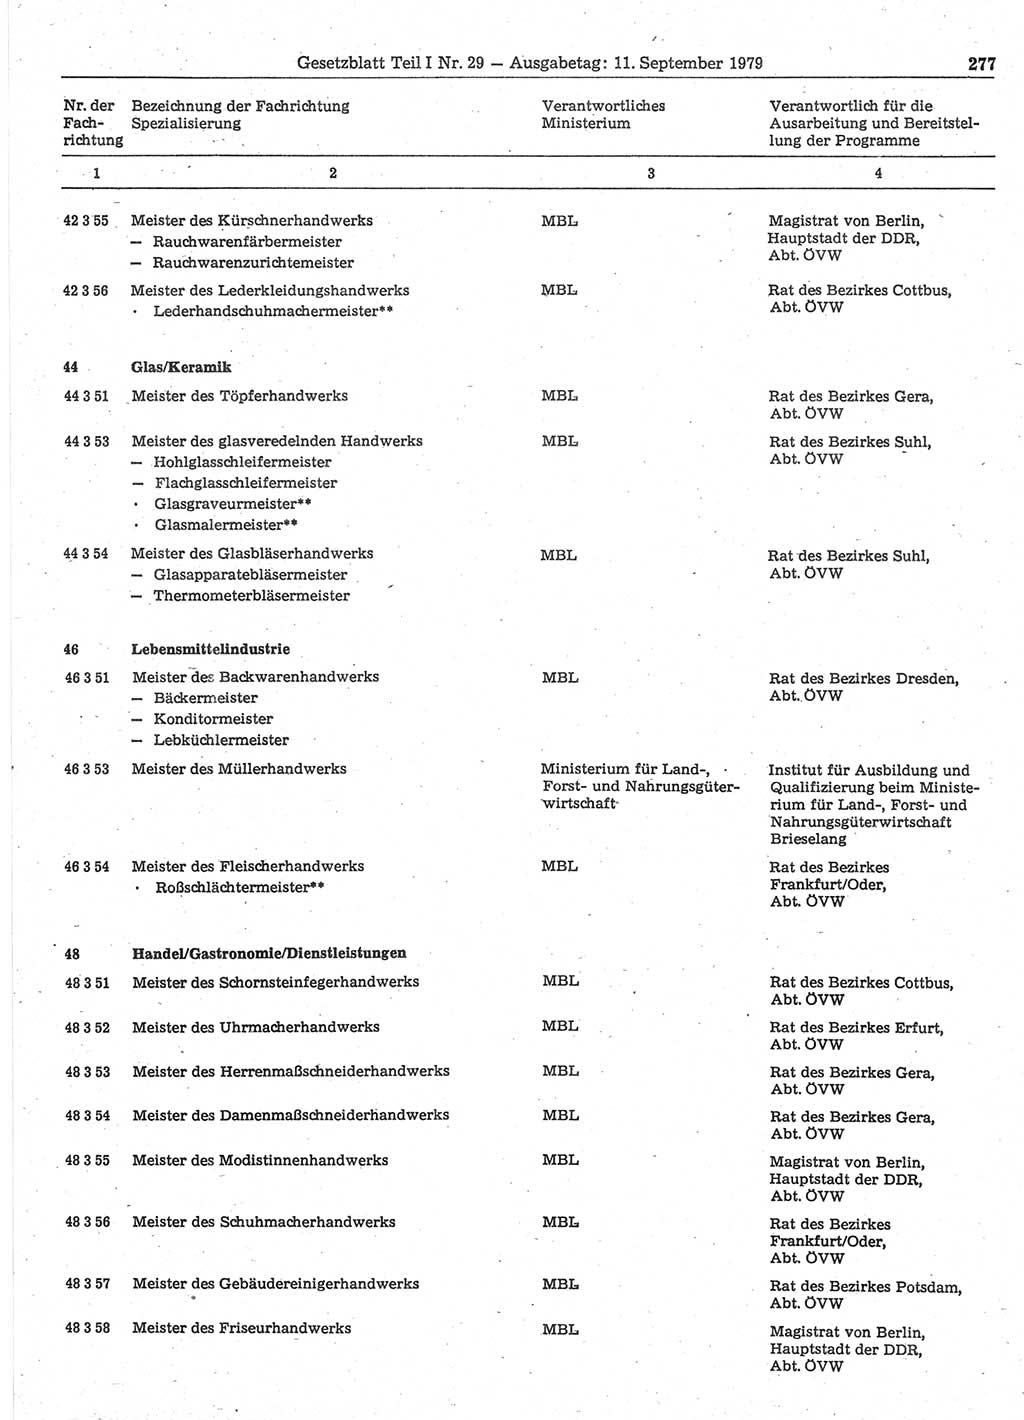 Gesetzblatt (GBl.) der Deutschen Demokratischen Republik (DDR) Teil Ⅰ 1979, Seite 277 (GBl. DDR Ⅰ 1979, S. 277)